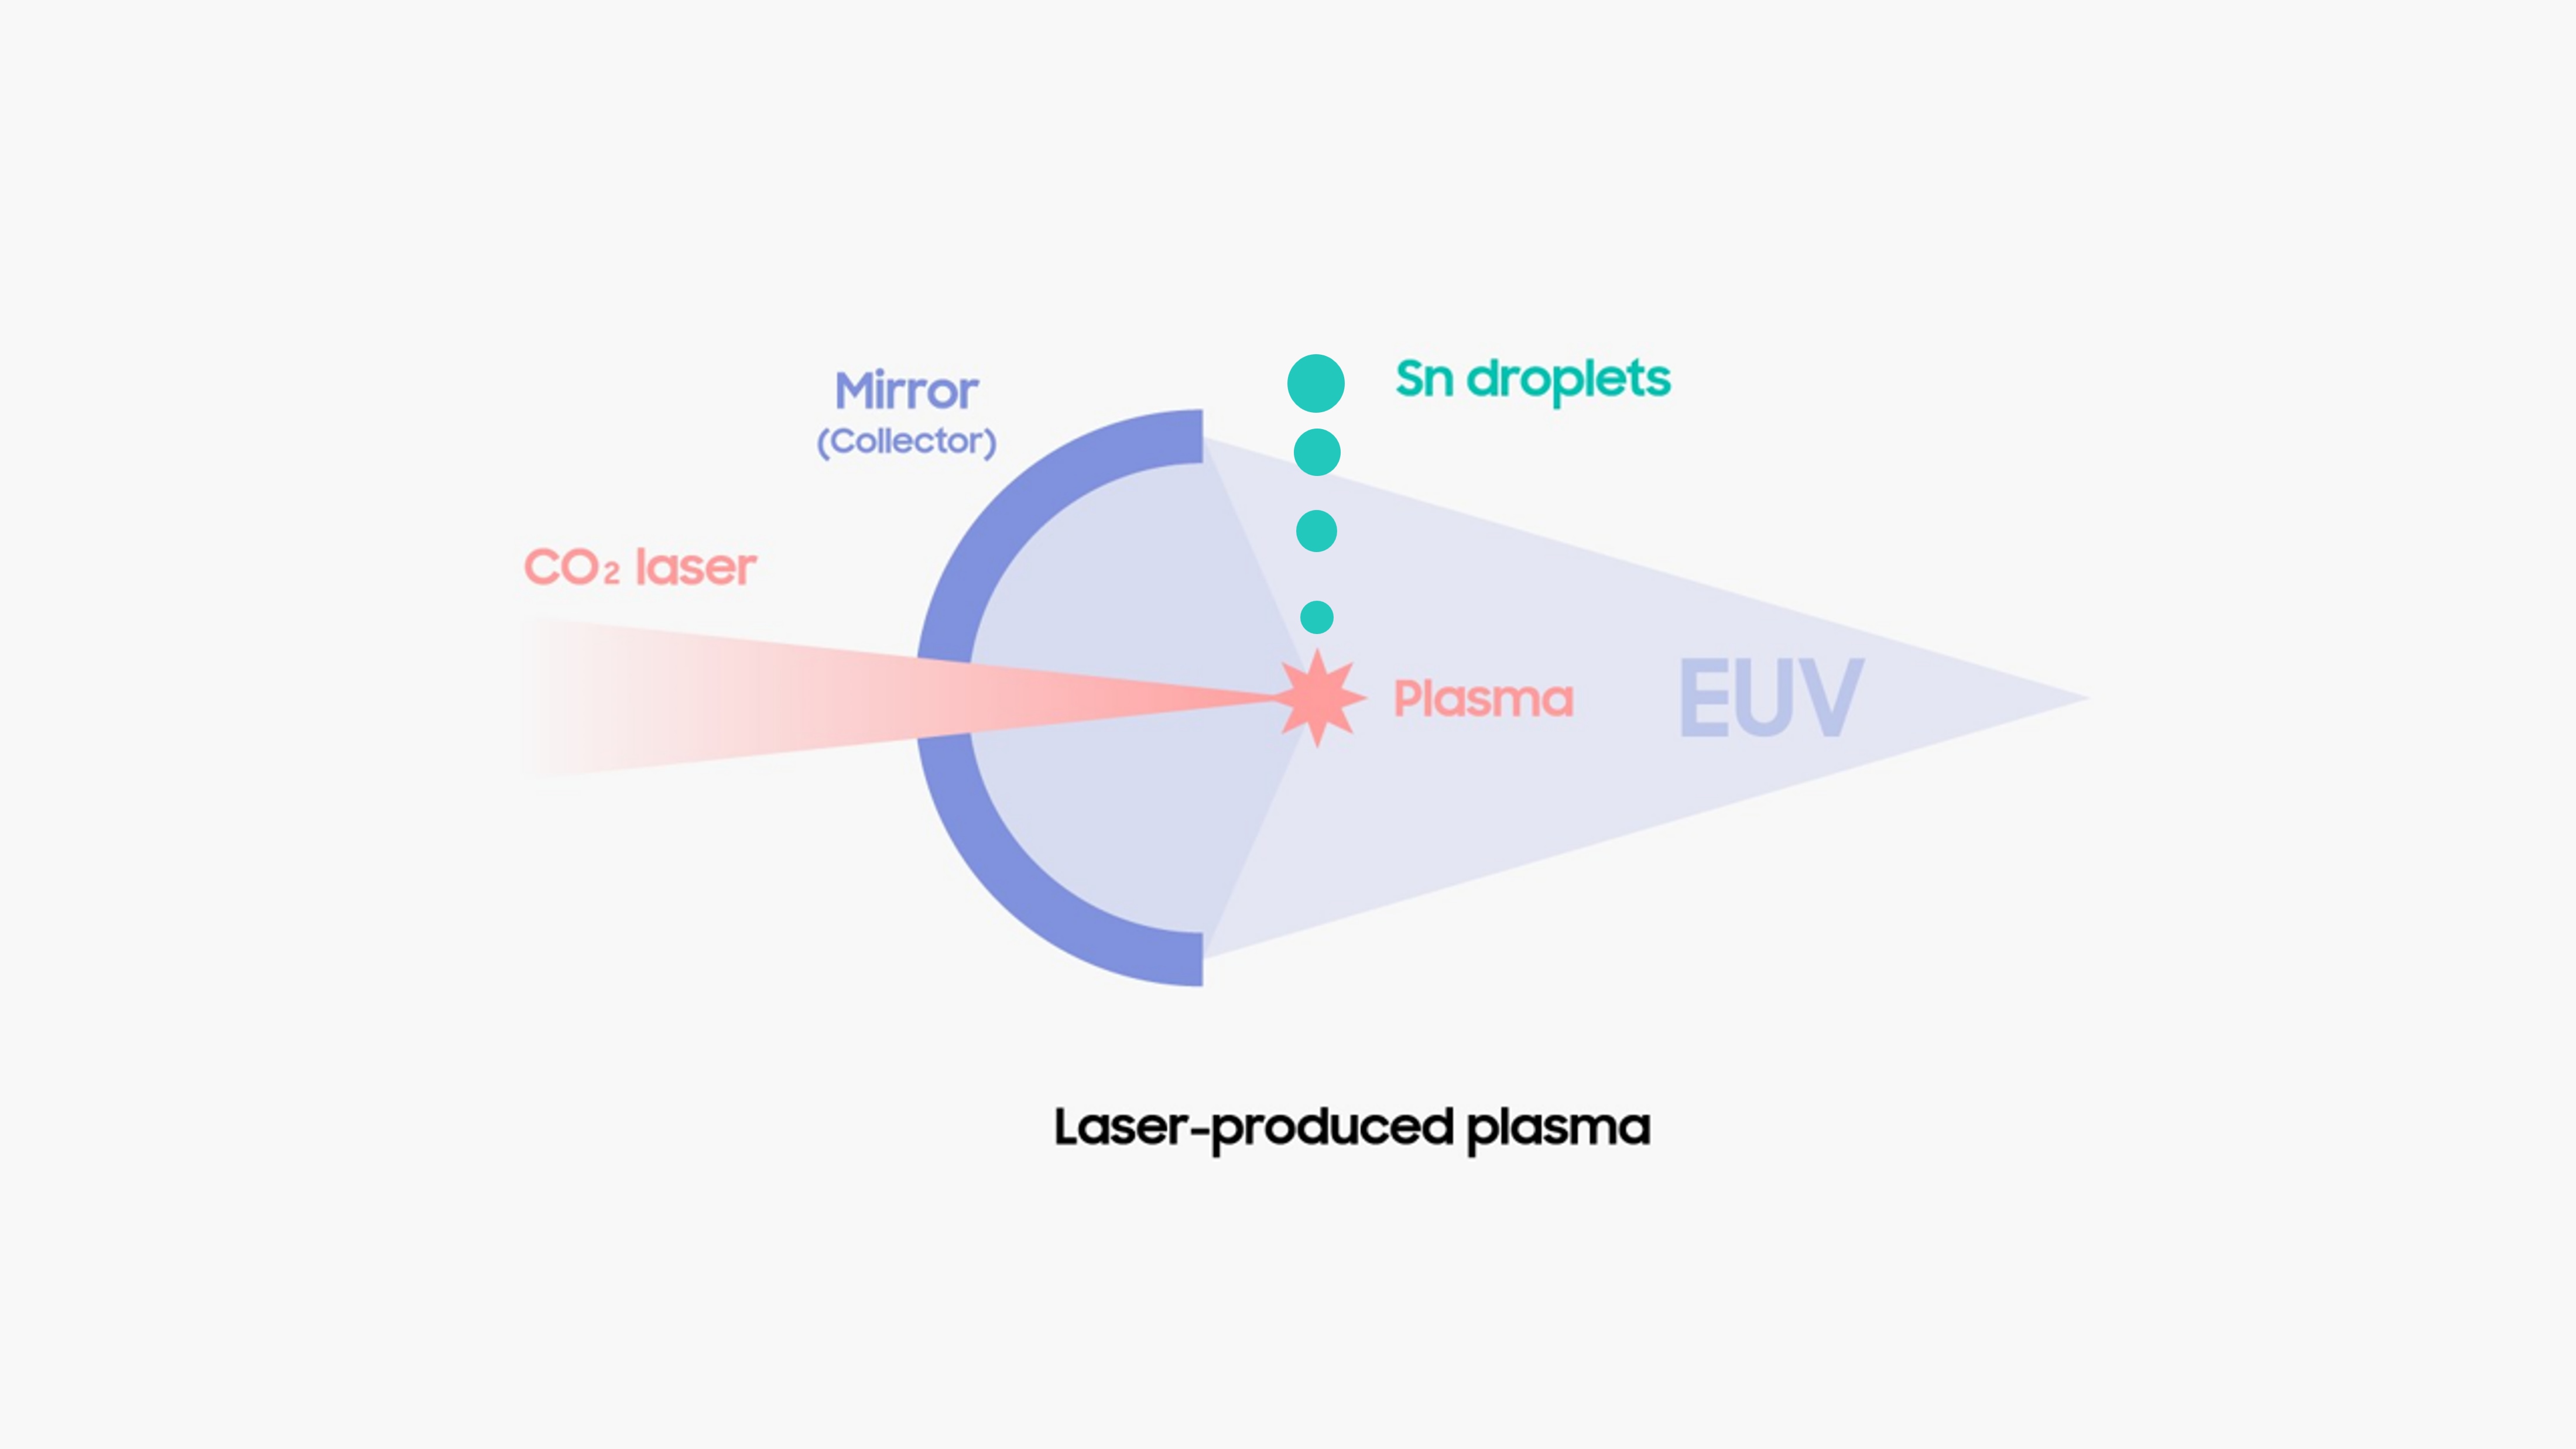 图[4] 让 CO2 激光（Laser）与掉落的 Sn（锡）准确碰撞来产生等离子体，并使用镜子将等离子体生成的光集合起来，最终产生 EUV。